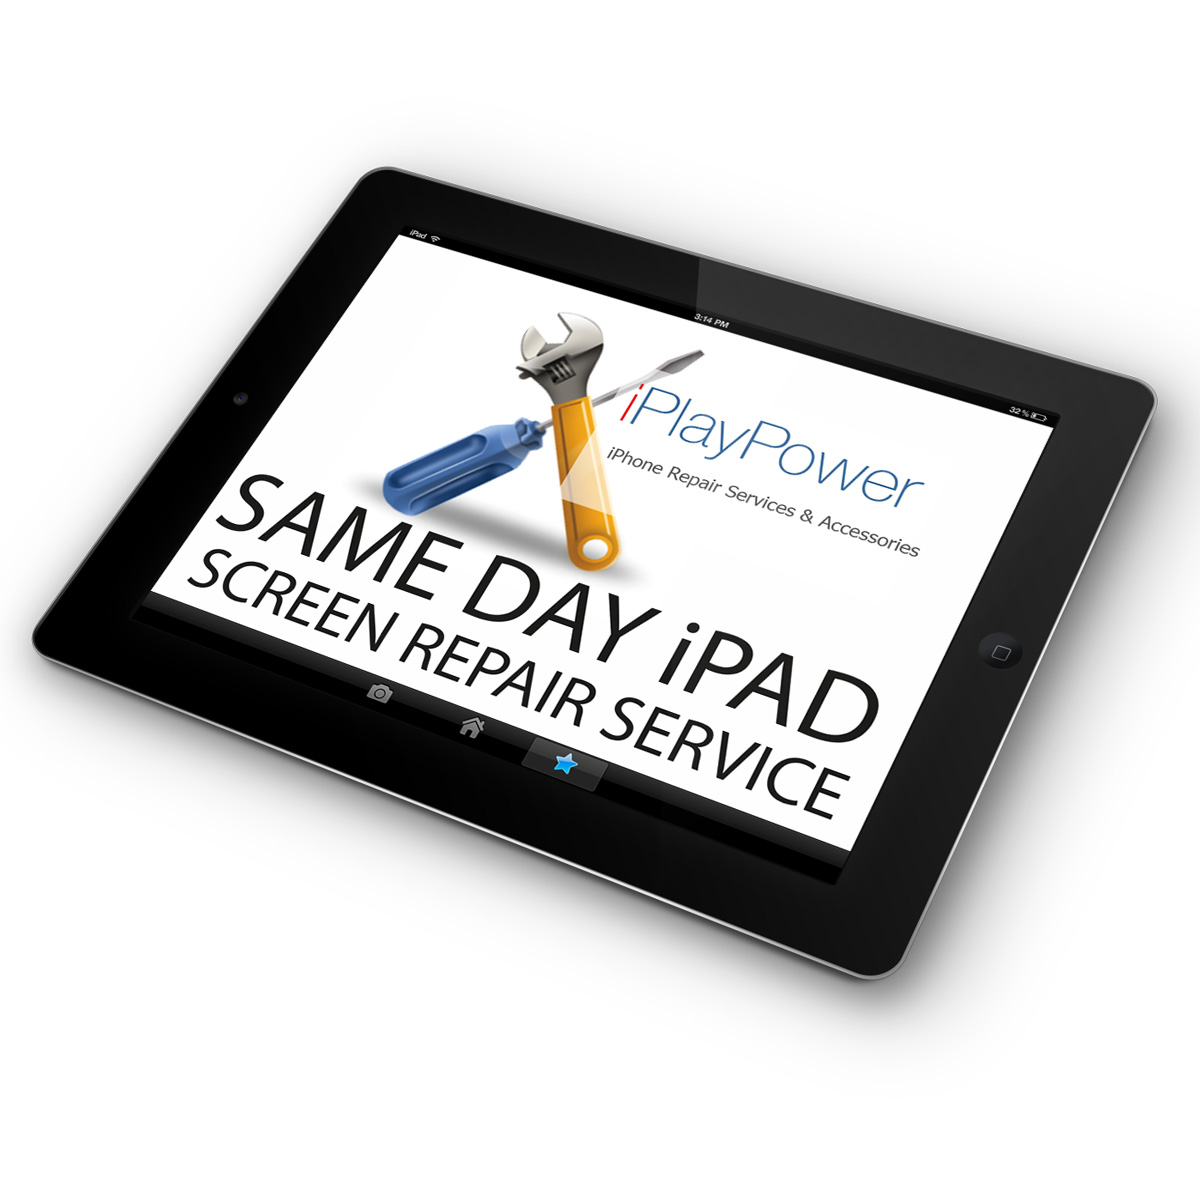 iPad 5 Glass Screen and LCD Repair